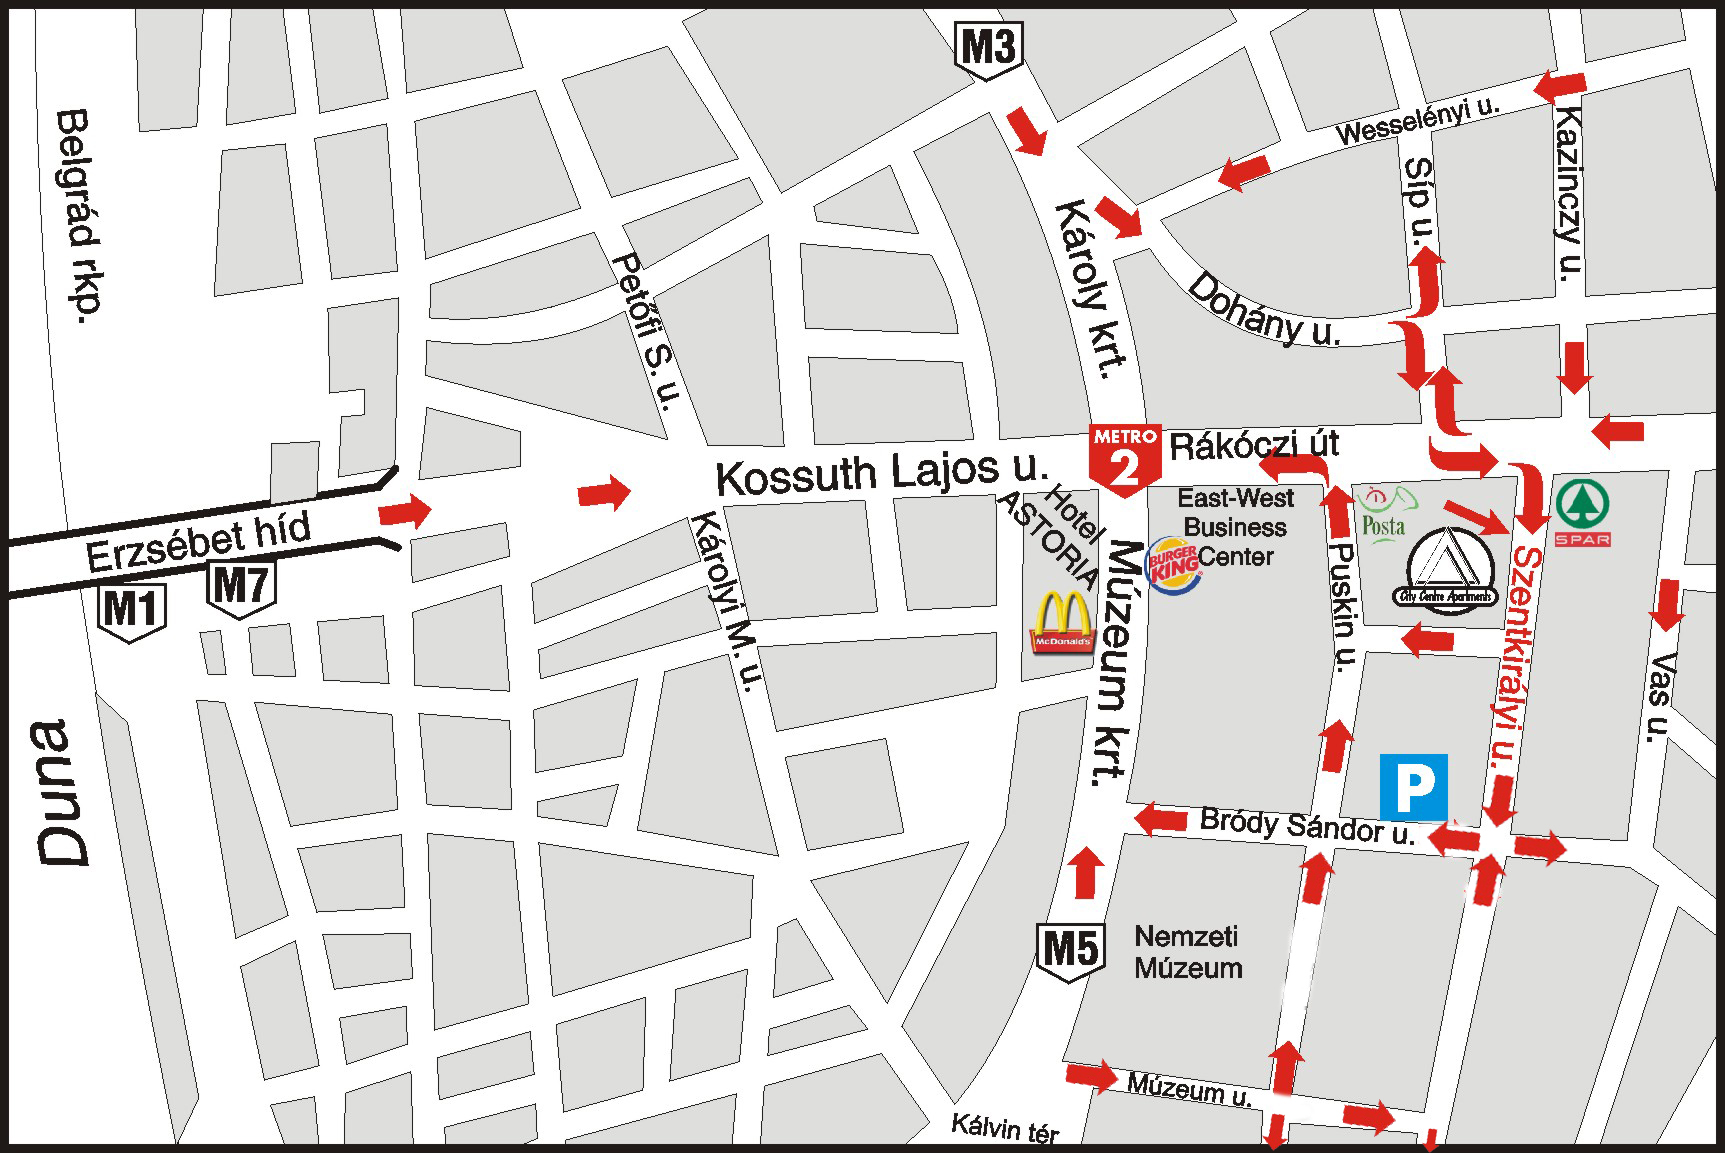 Szk mapa apartament hotelnoclegi dla grup w Budapeszcie